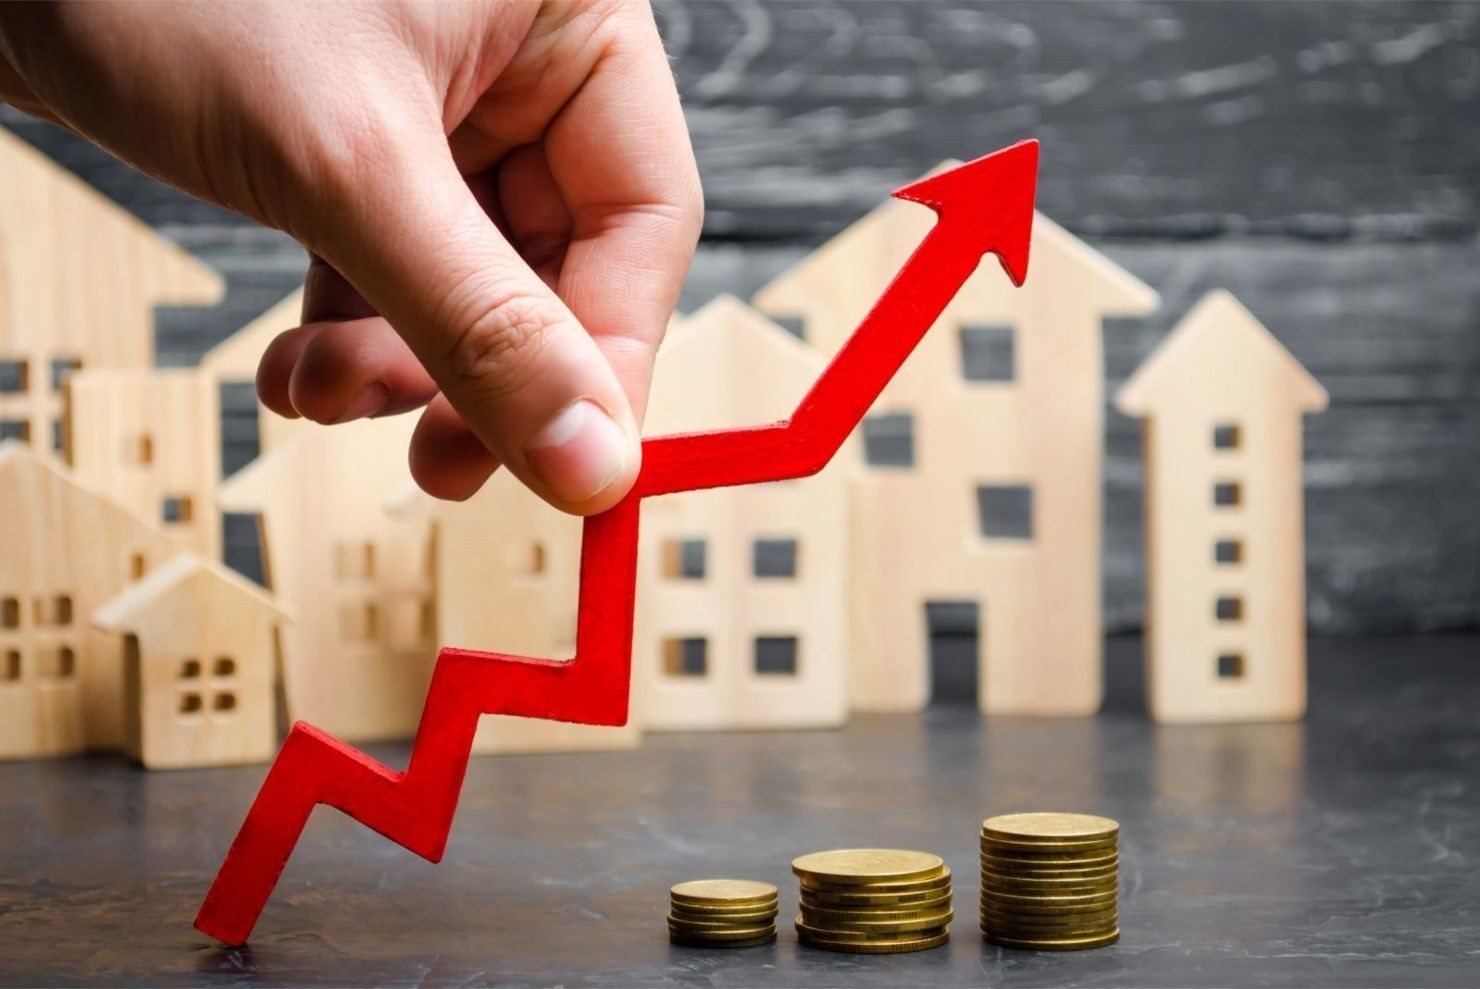 Động thái mới của nhà đầu tư: Chuyển hướng đầu tư bất động sản sinh dòng tiền thay vì để 